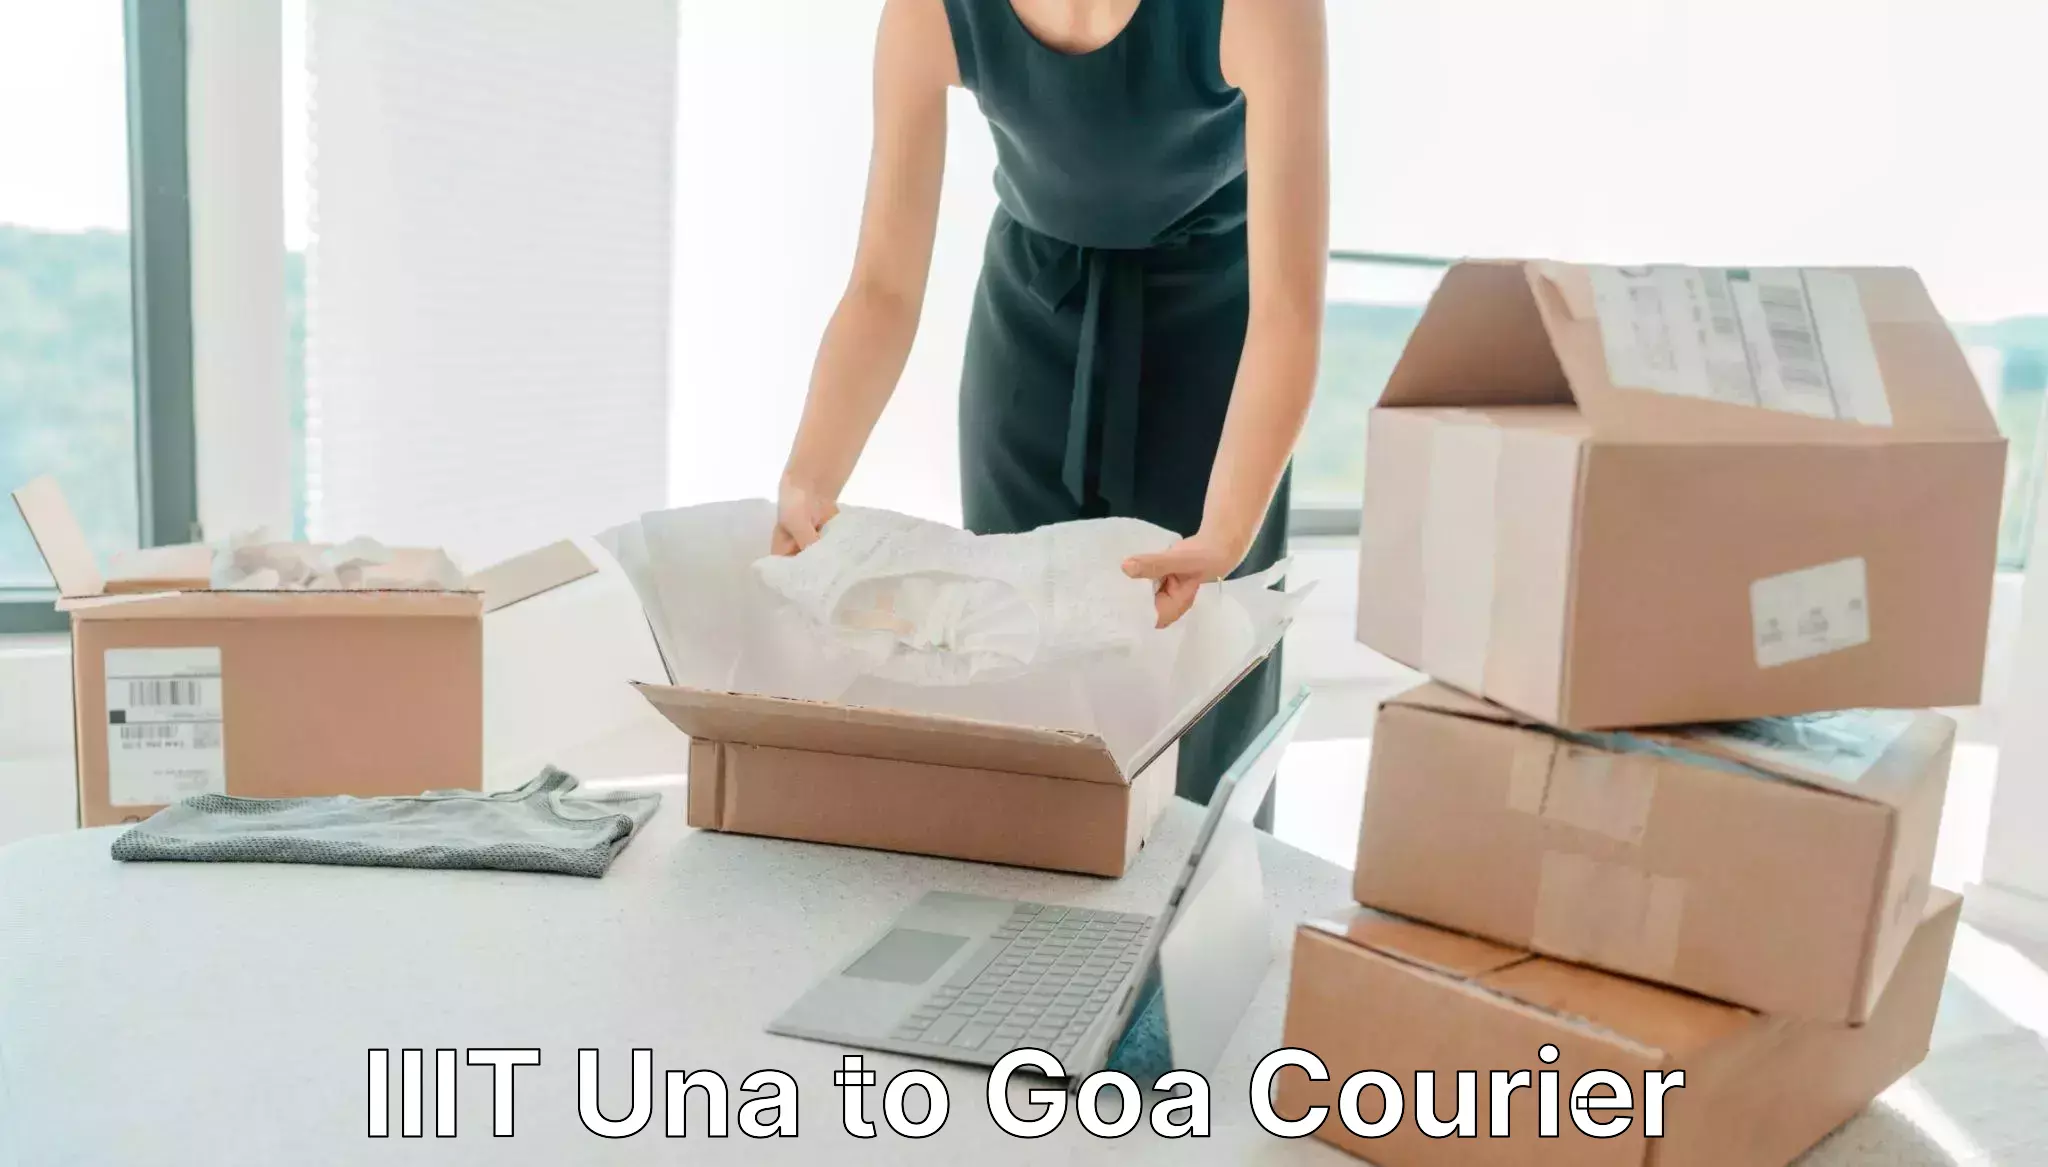 Specialized shipment handling IIIT Una to IIT Goa